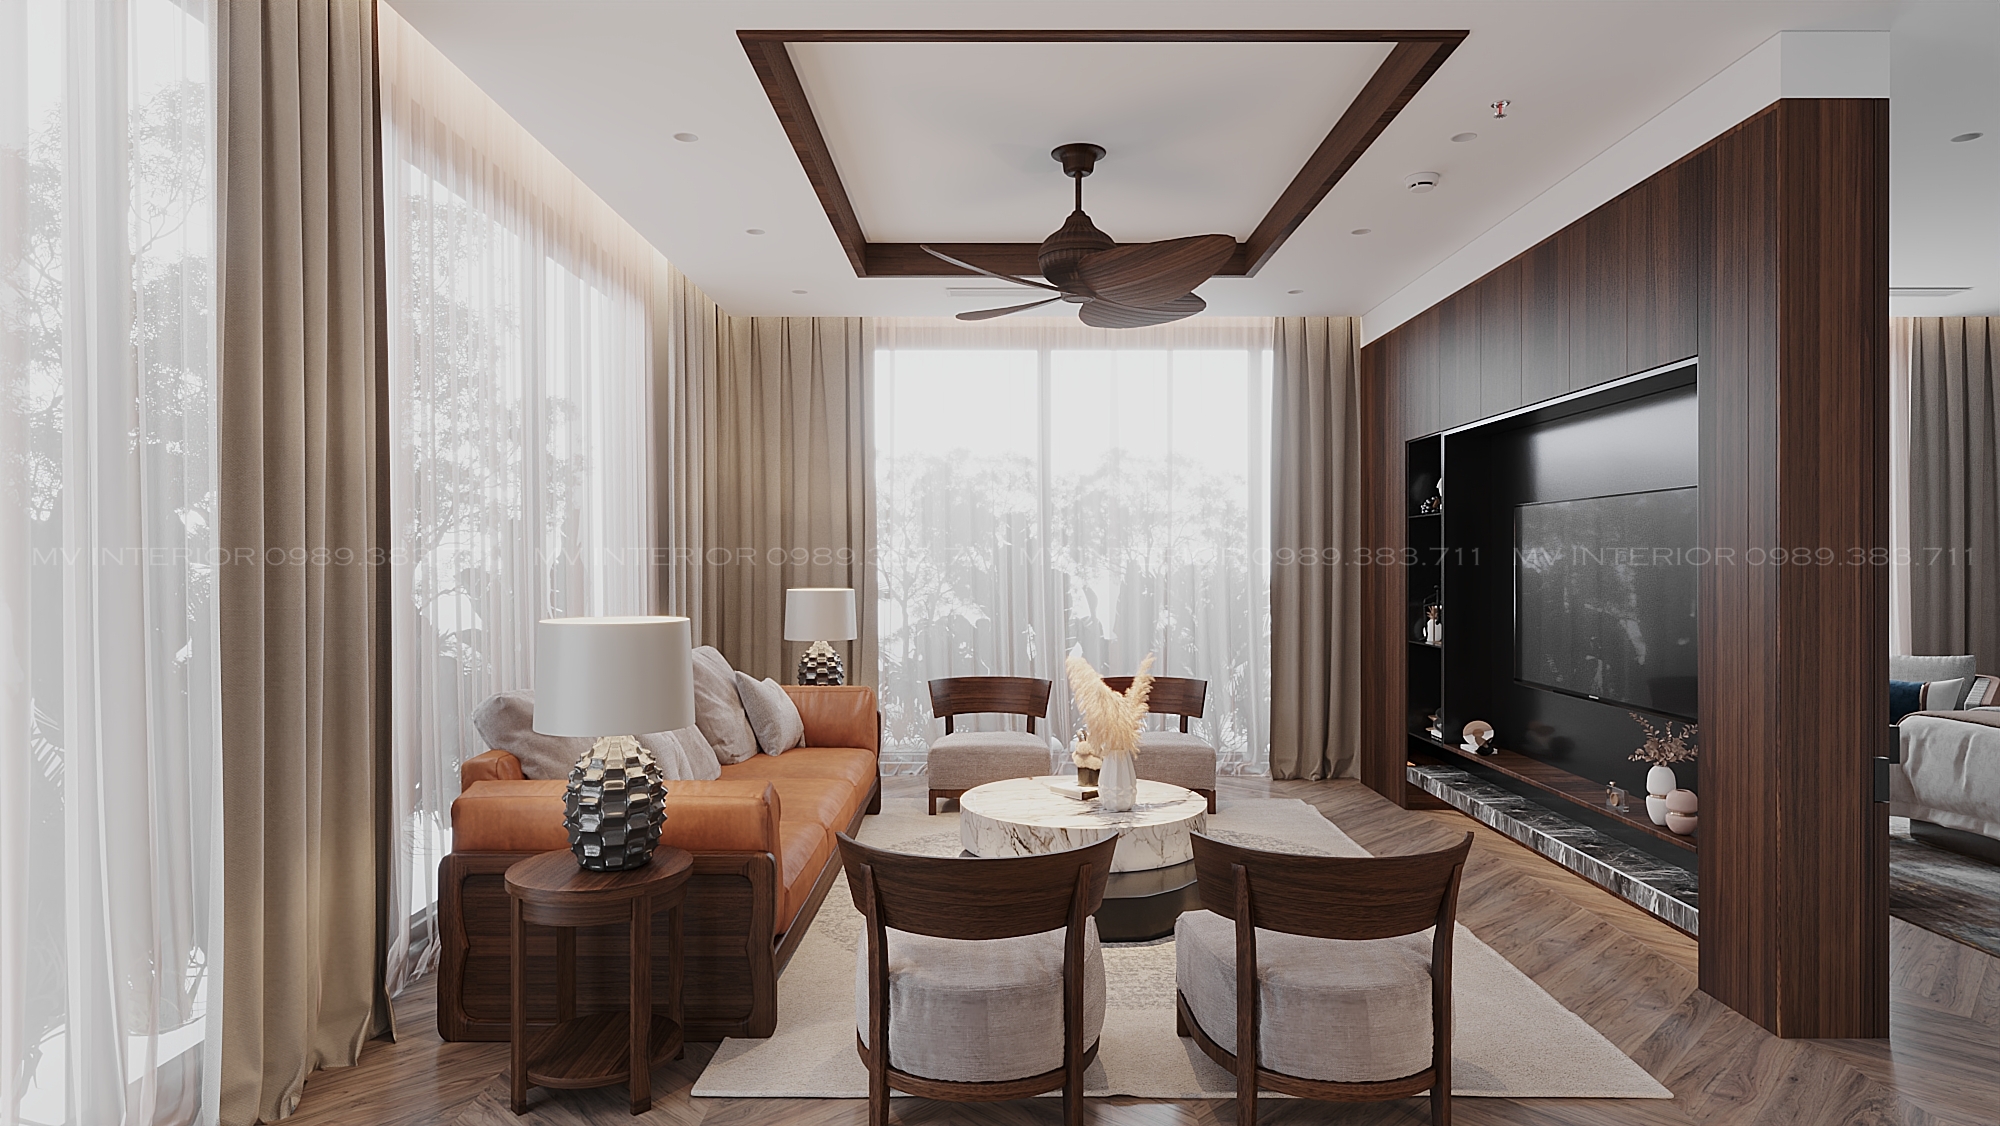 Thiết kế nội thất Resort tại Hà Nội phòng nghỉ dưỡng -Hòa bình 1634474776 2